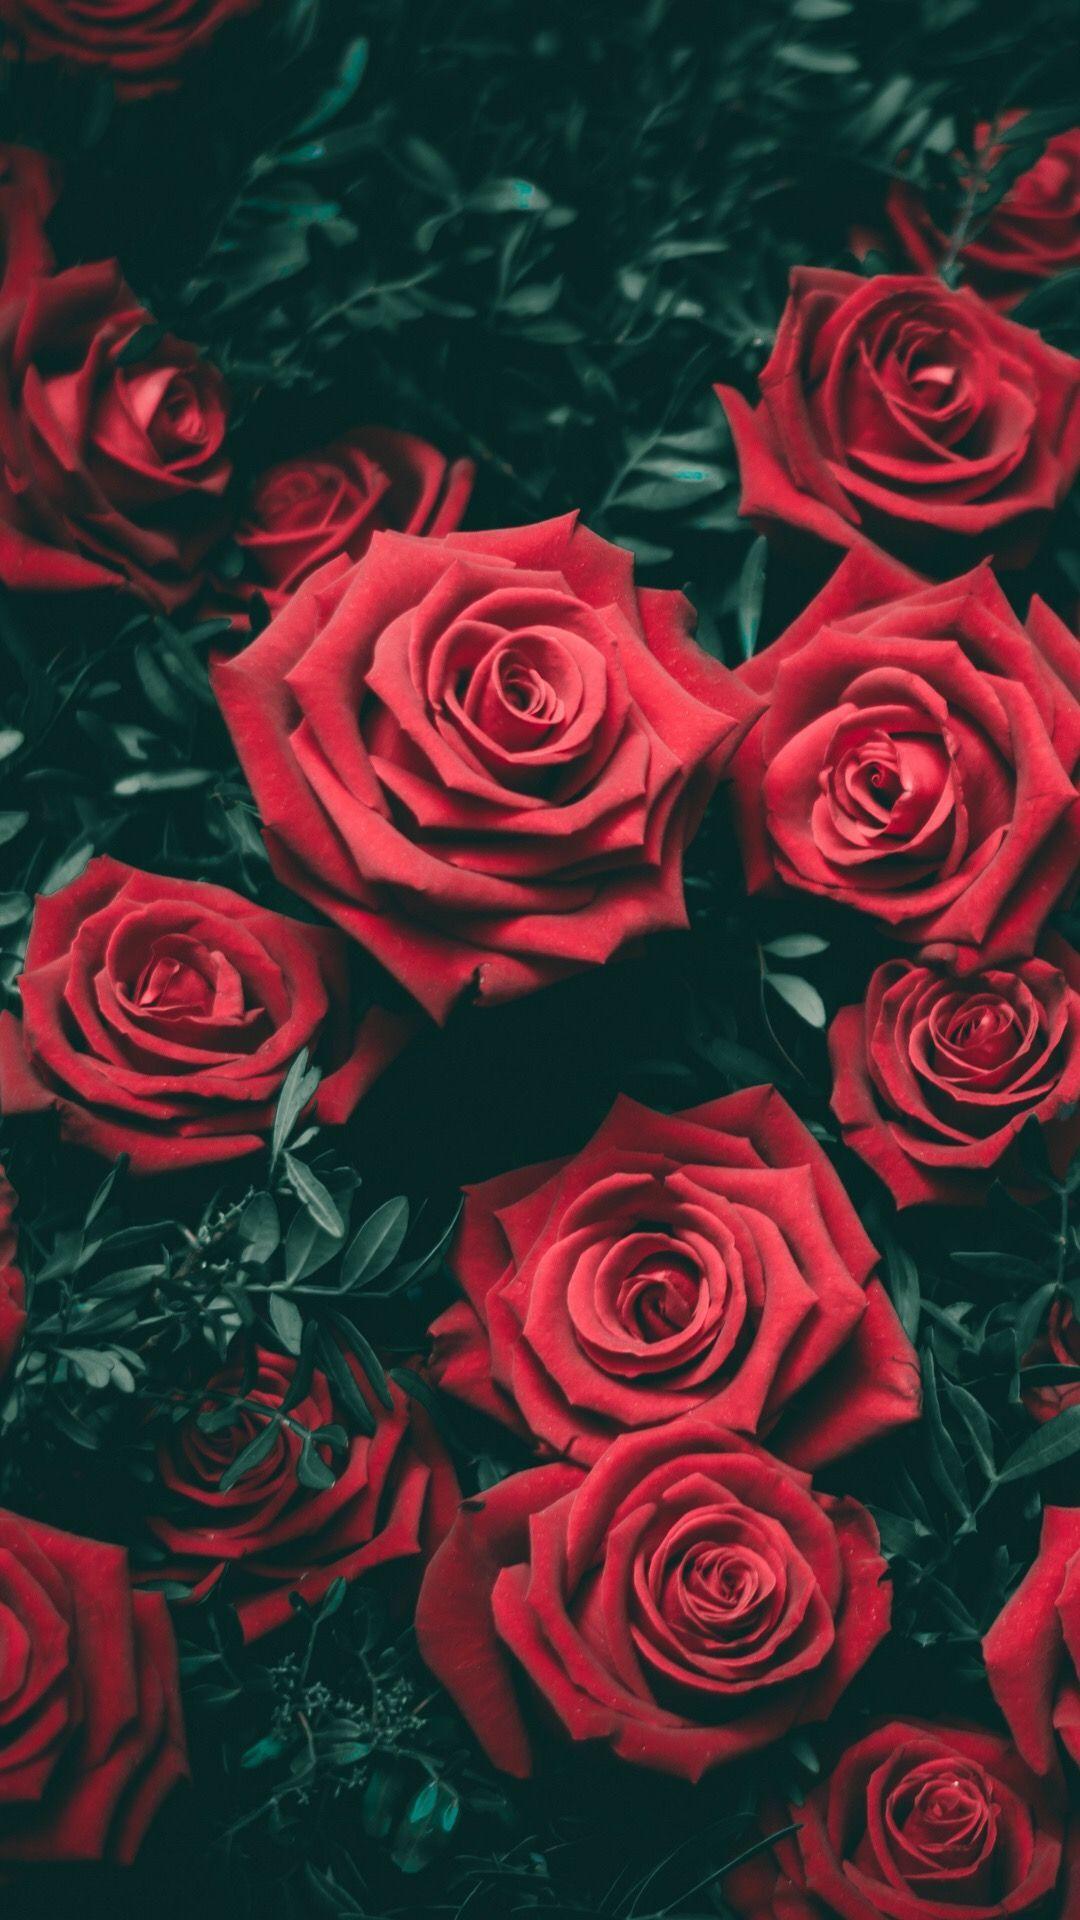 1080x1920 Hoa hồng vườn đỏ.  Những bông hoa.  Hình nền iphone hoa